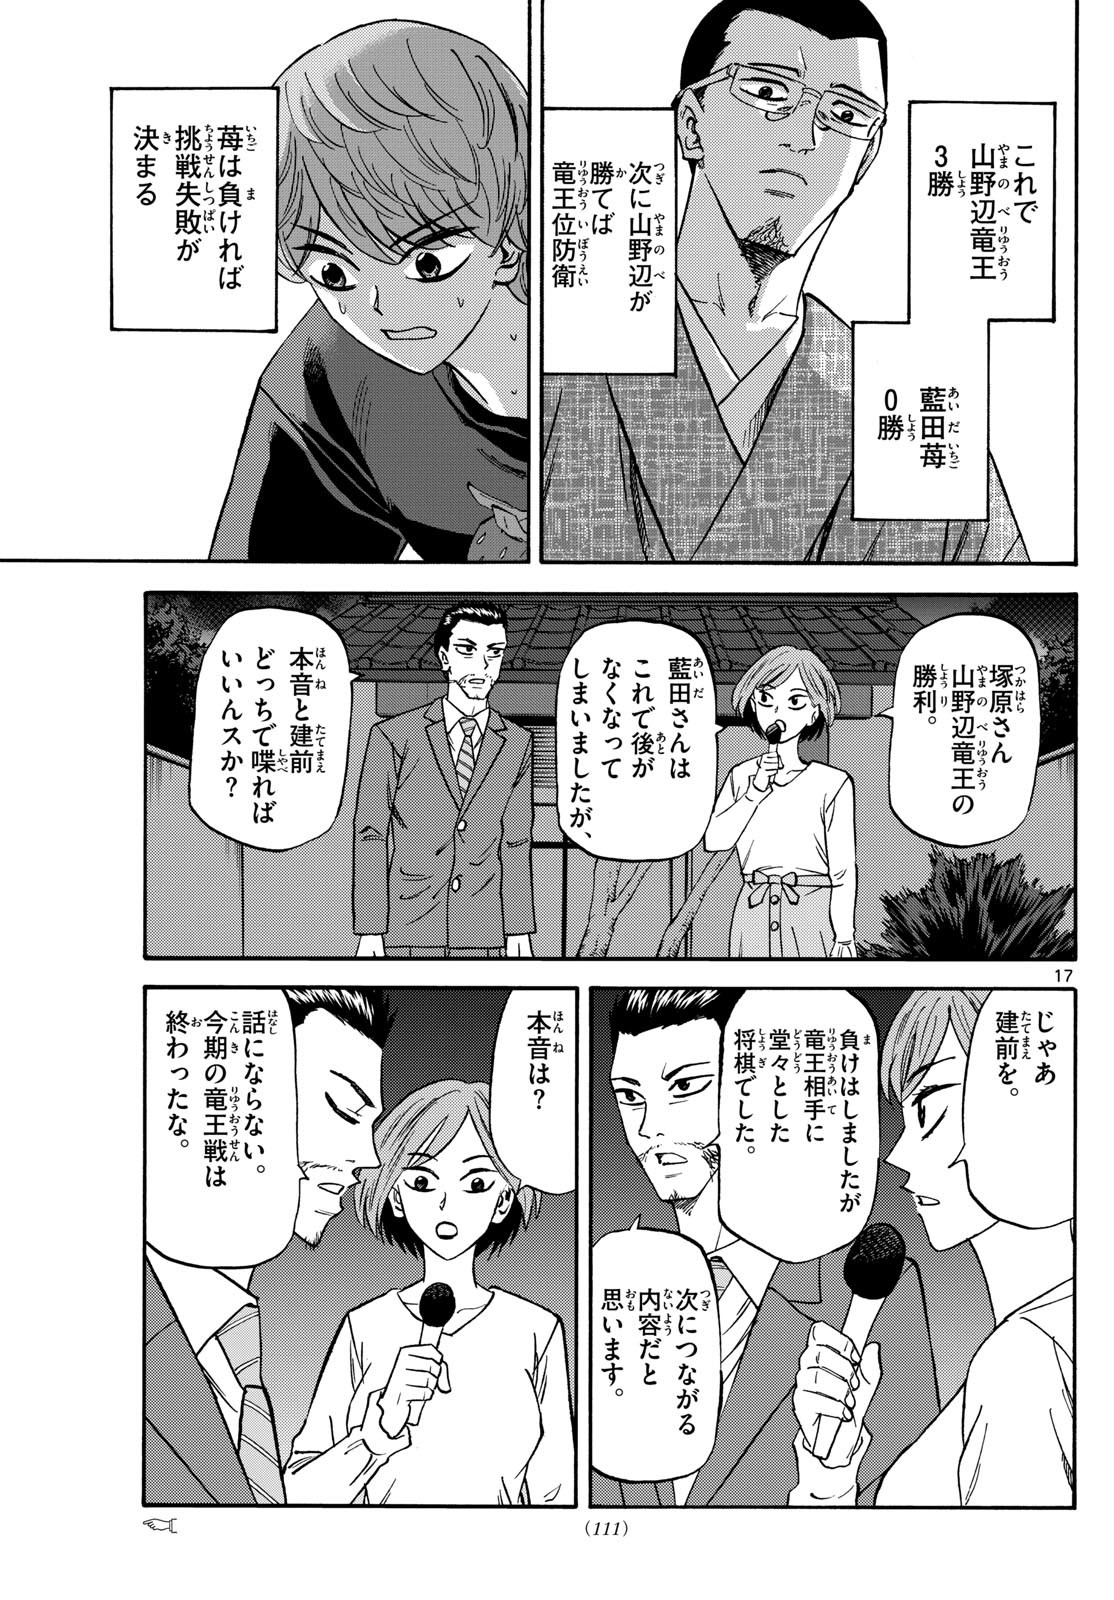 Ryu-to-Ichigo - Chapter 159 - Page 17